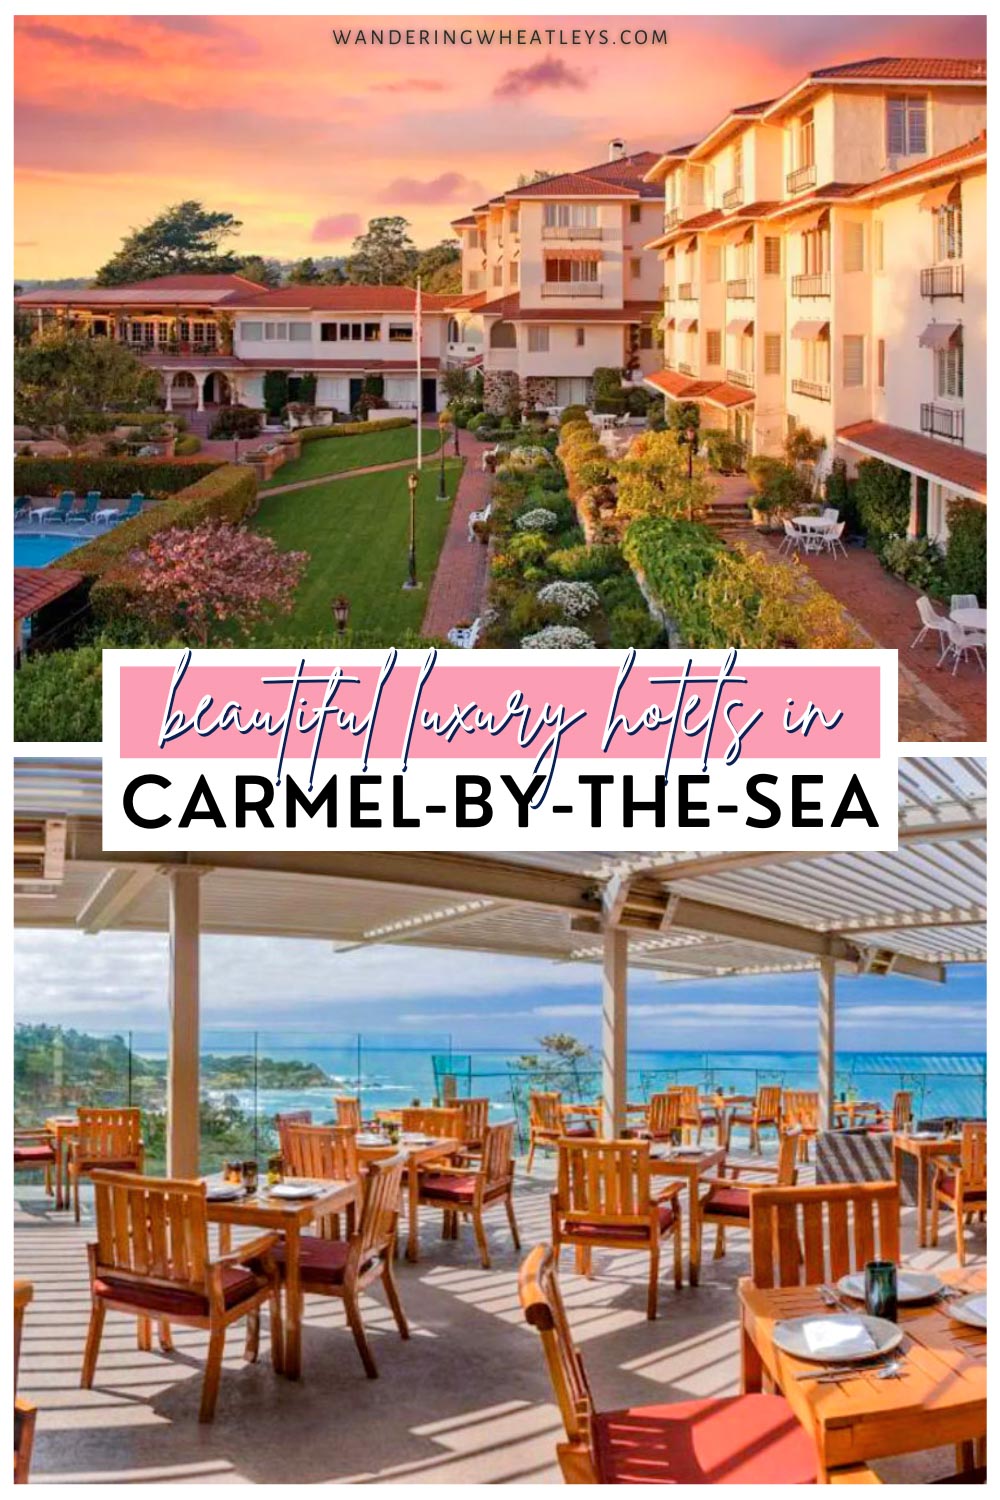 Best Luxury Hotels in Carmel-by-the-sea